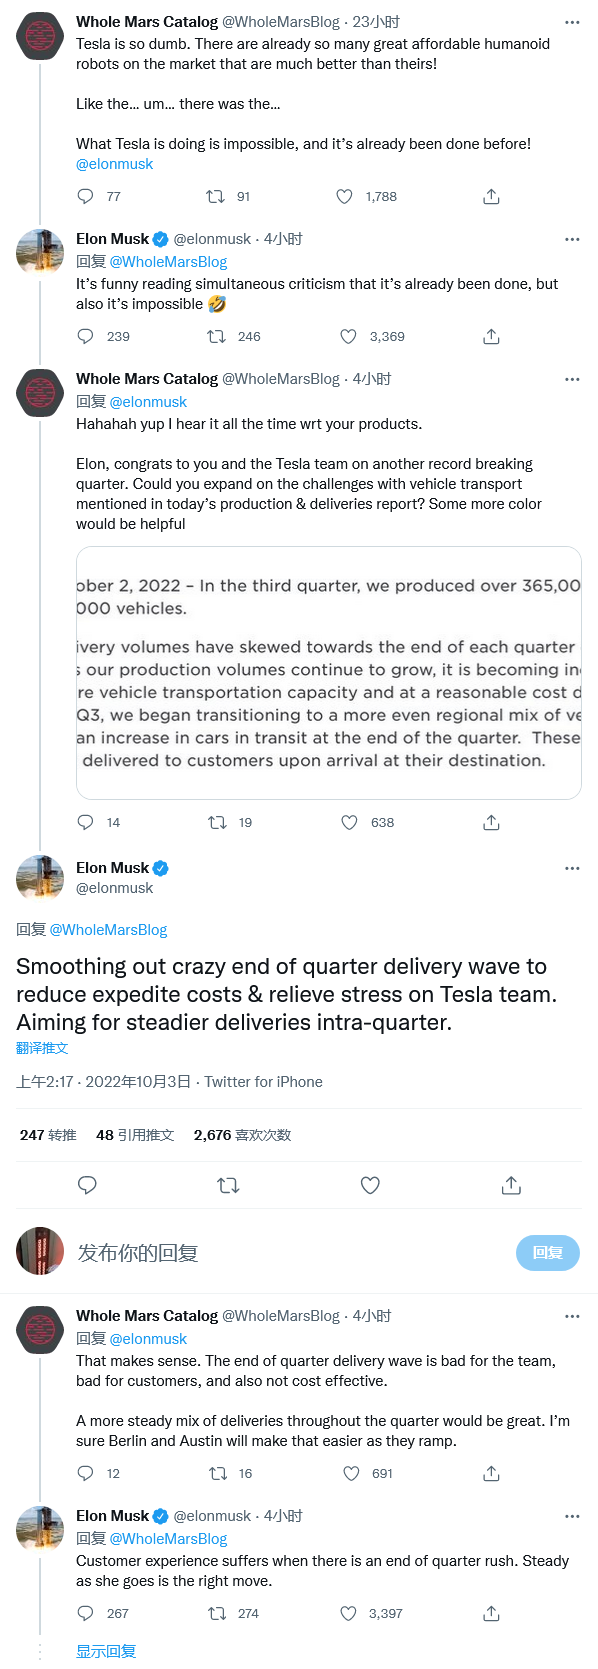 Screenshot 2022-10-03 at 06-39-15 登录 Twitter，关注Elon Musk.png